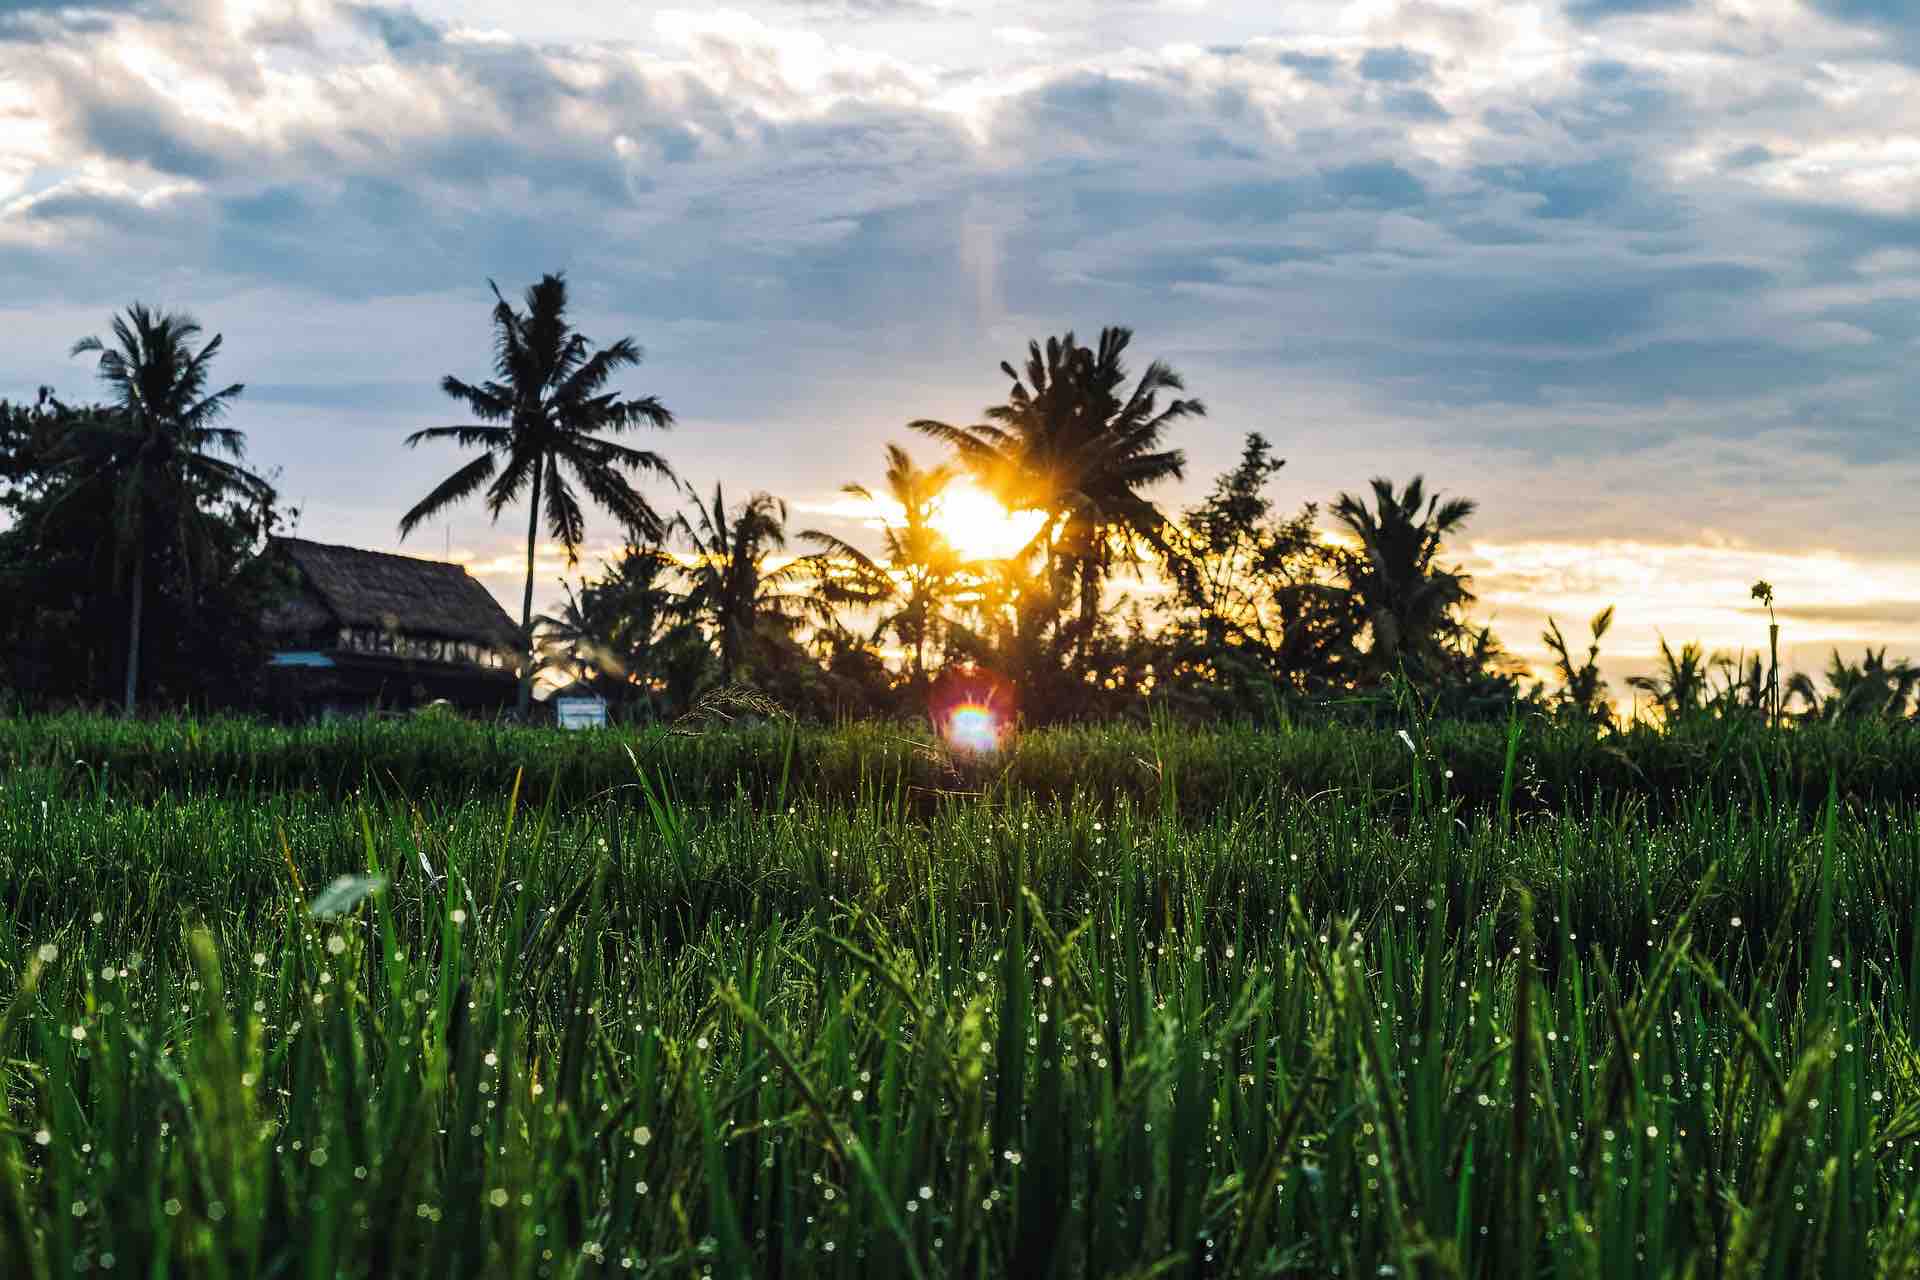 Ubud rice paddy during sunrise 1